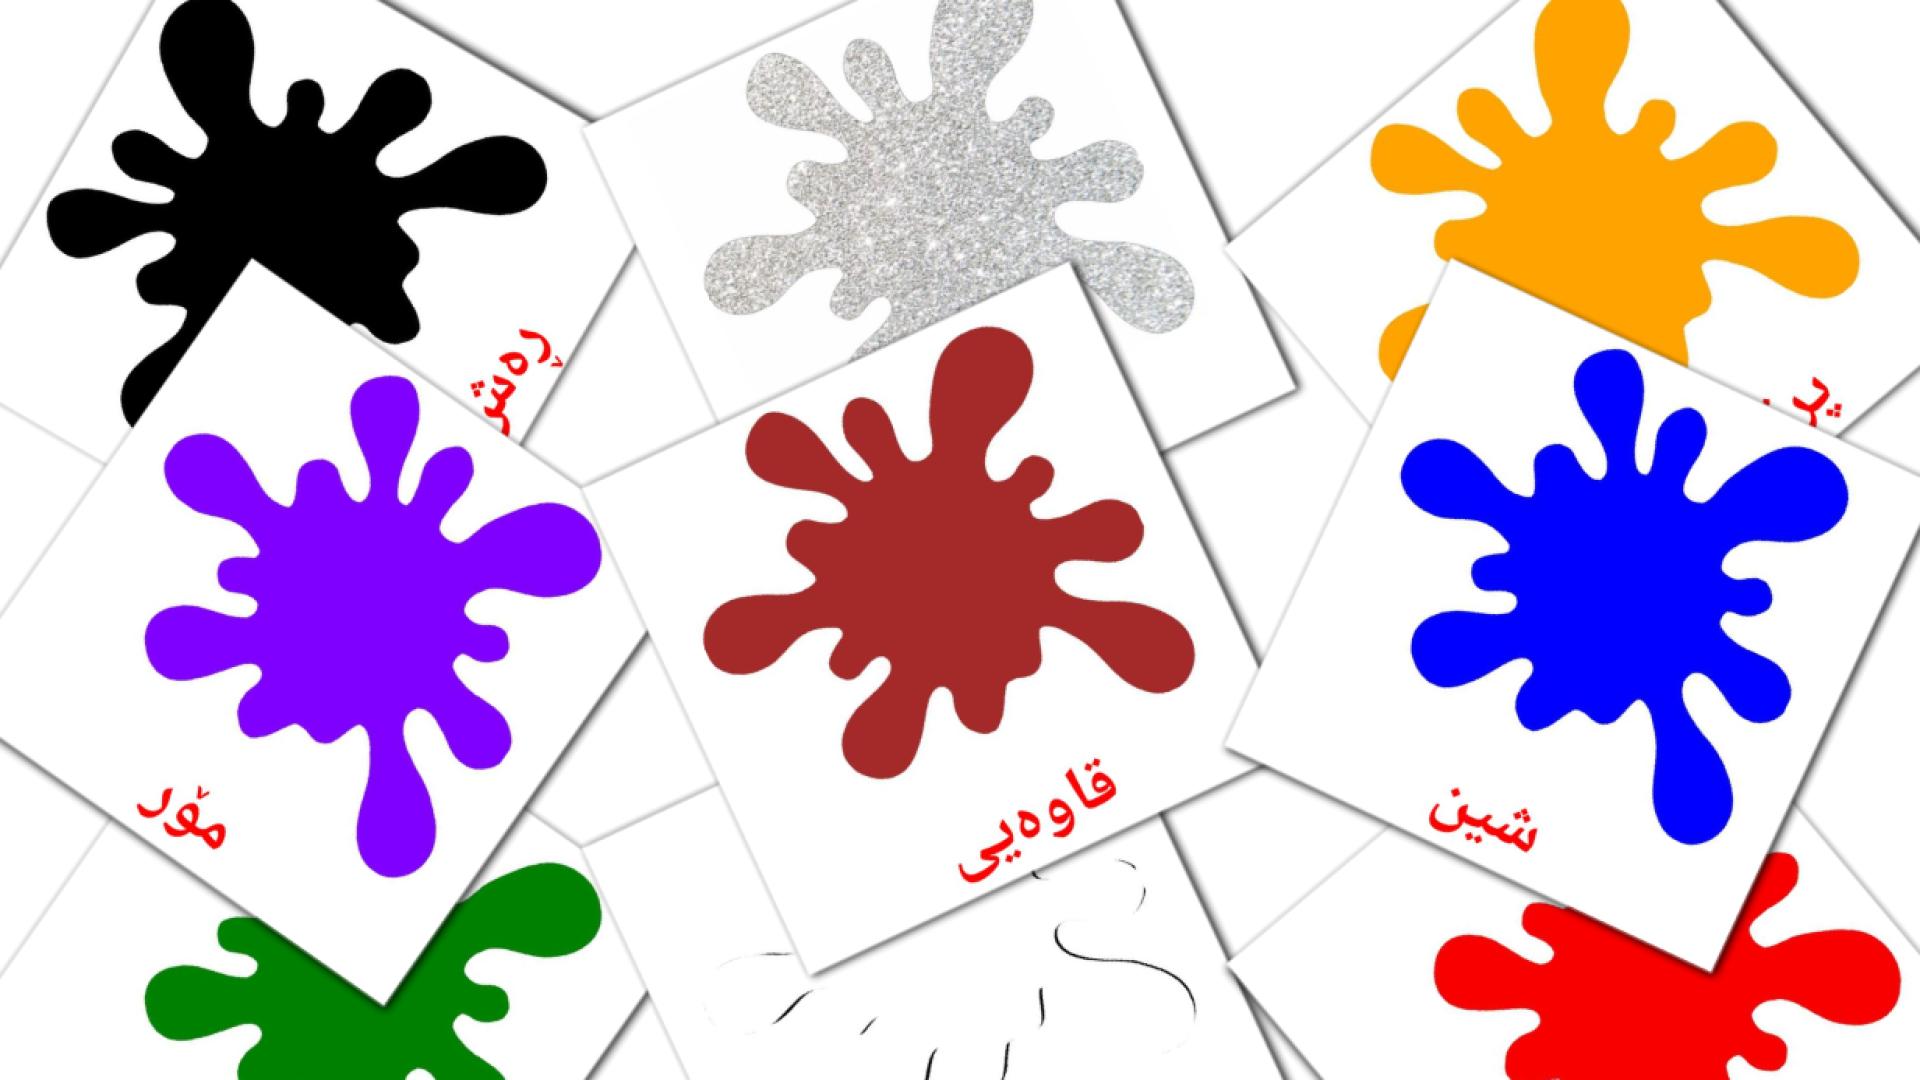 ڕەنگ و شێوەکان kurdish(sorani) vocabulary flashcards